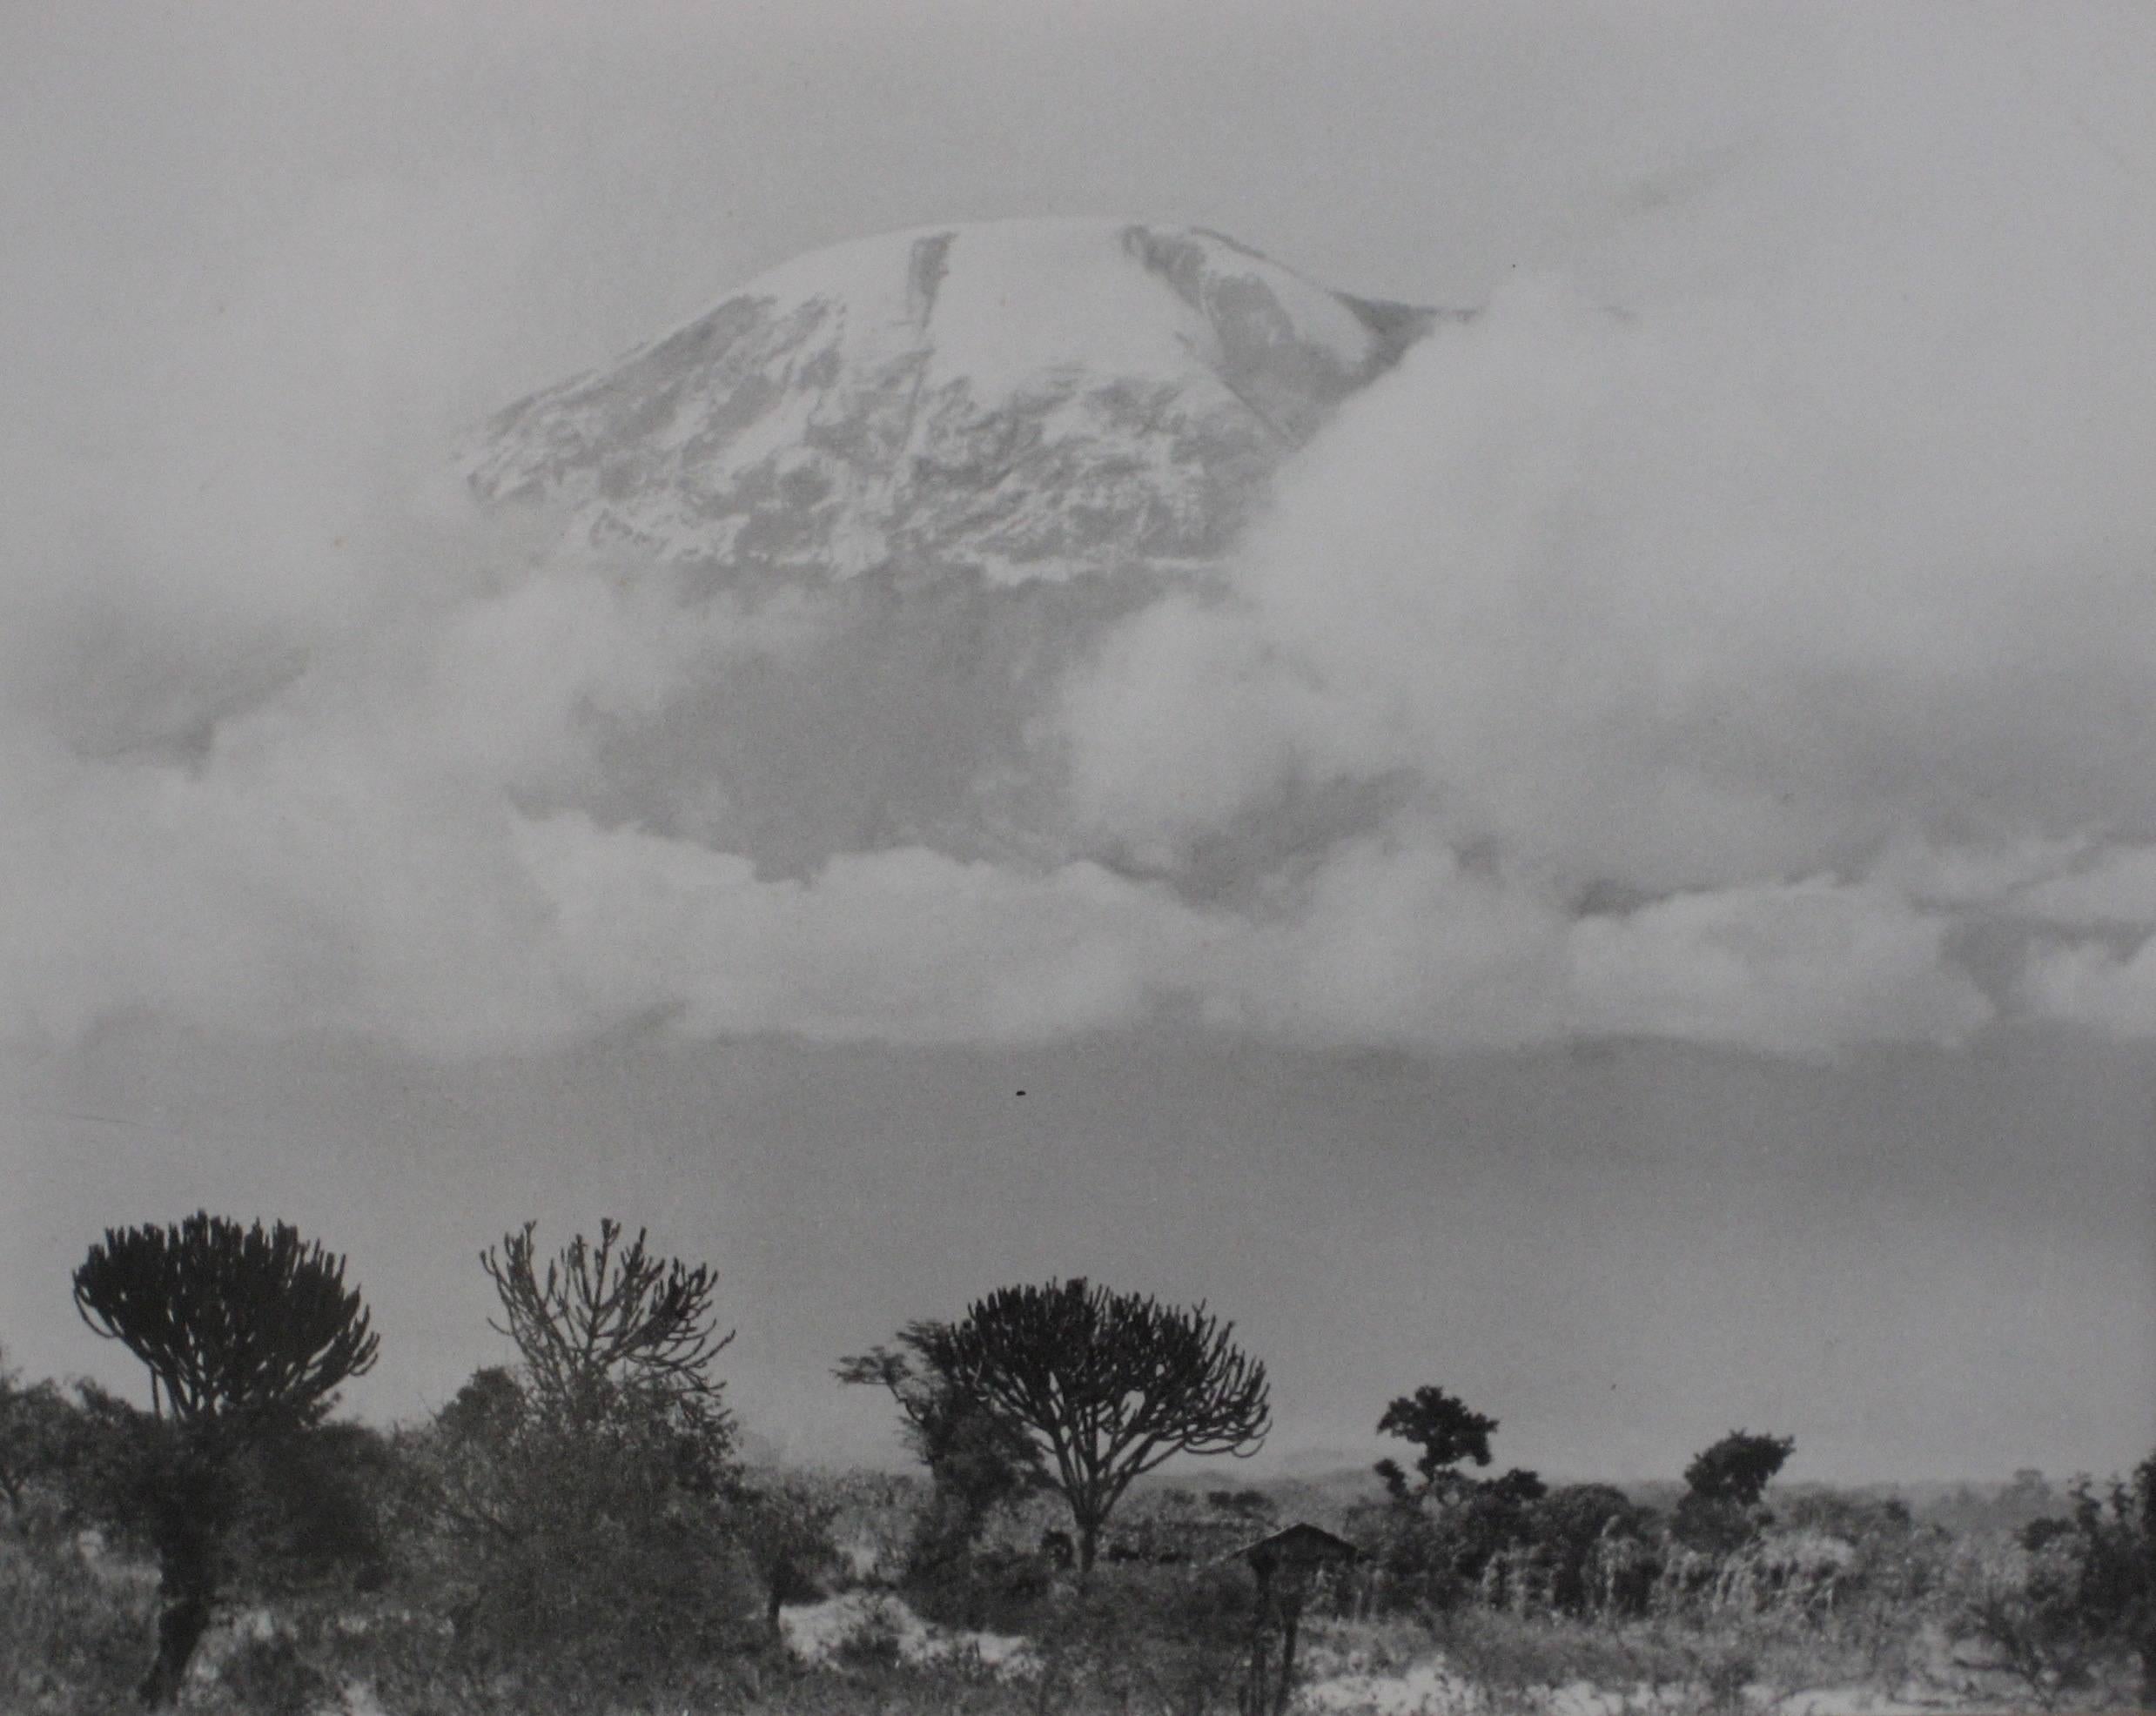 Marjorie Hunt Landscape Photograph - Mountain Landscape Through Clouds, Black and White Photograph, Circa 1960s